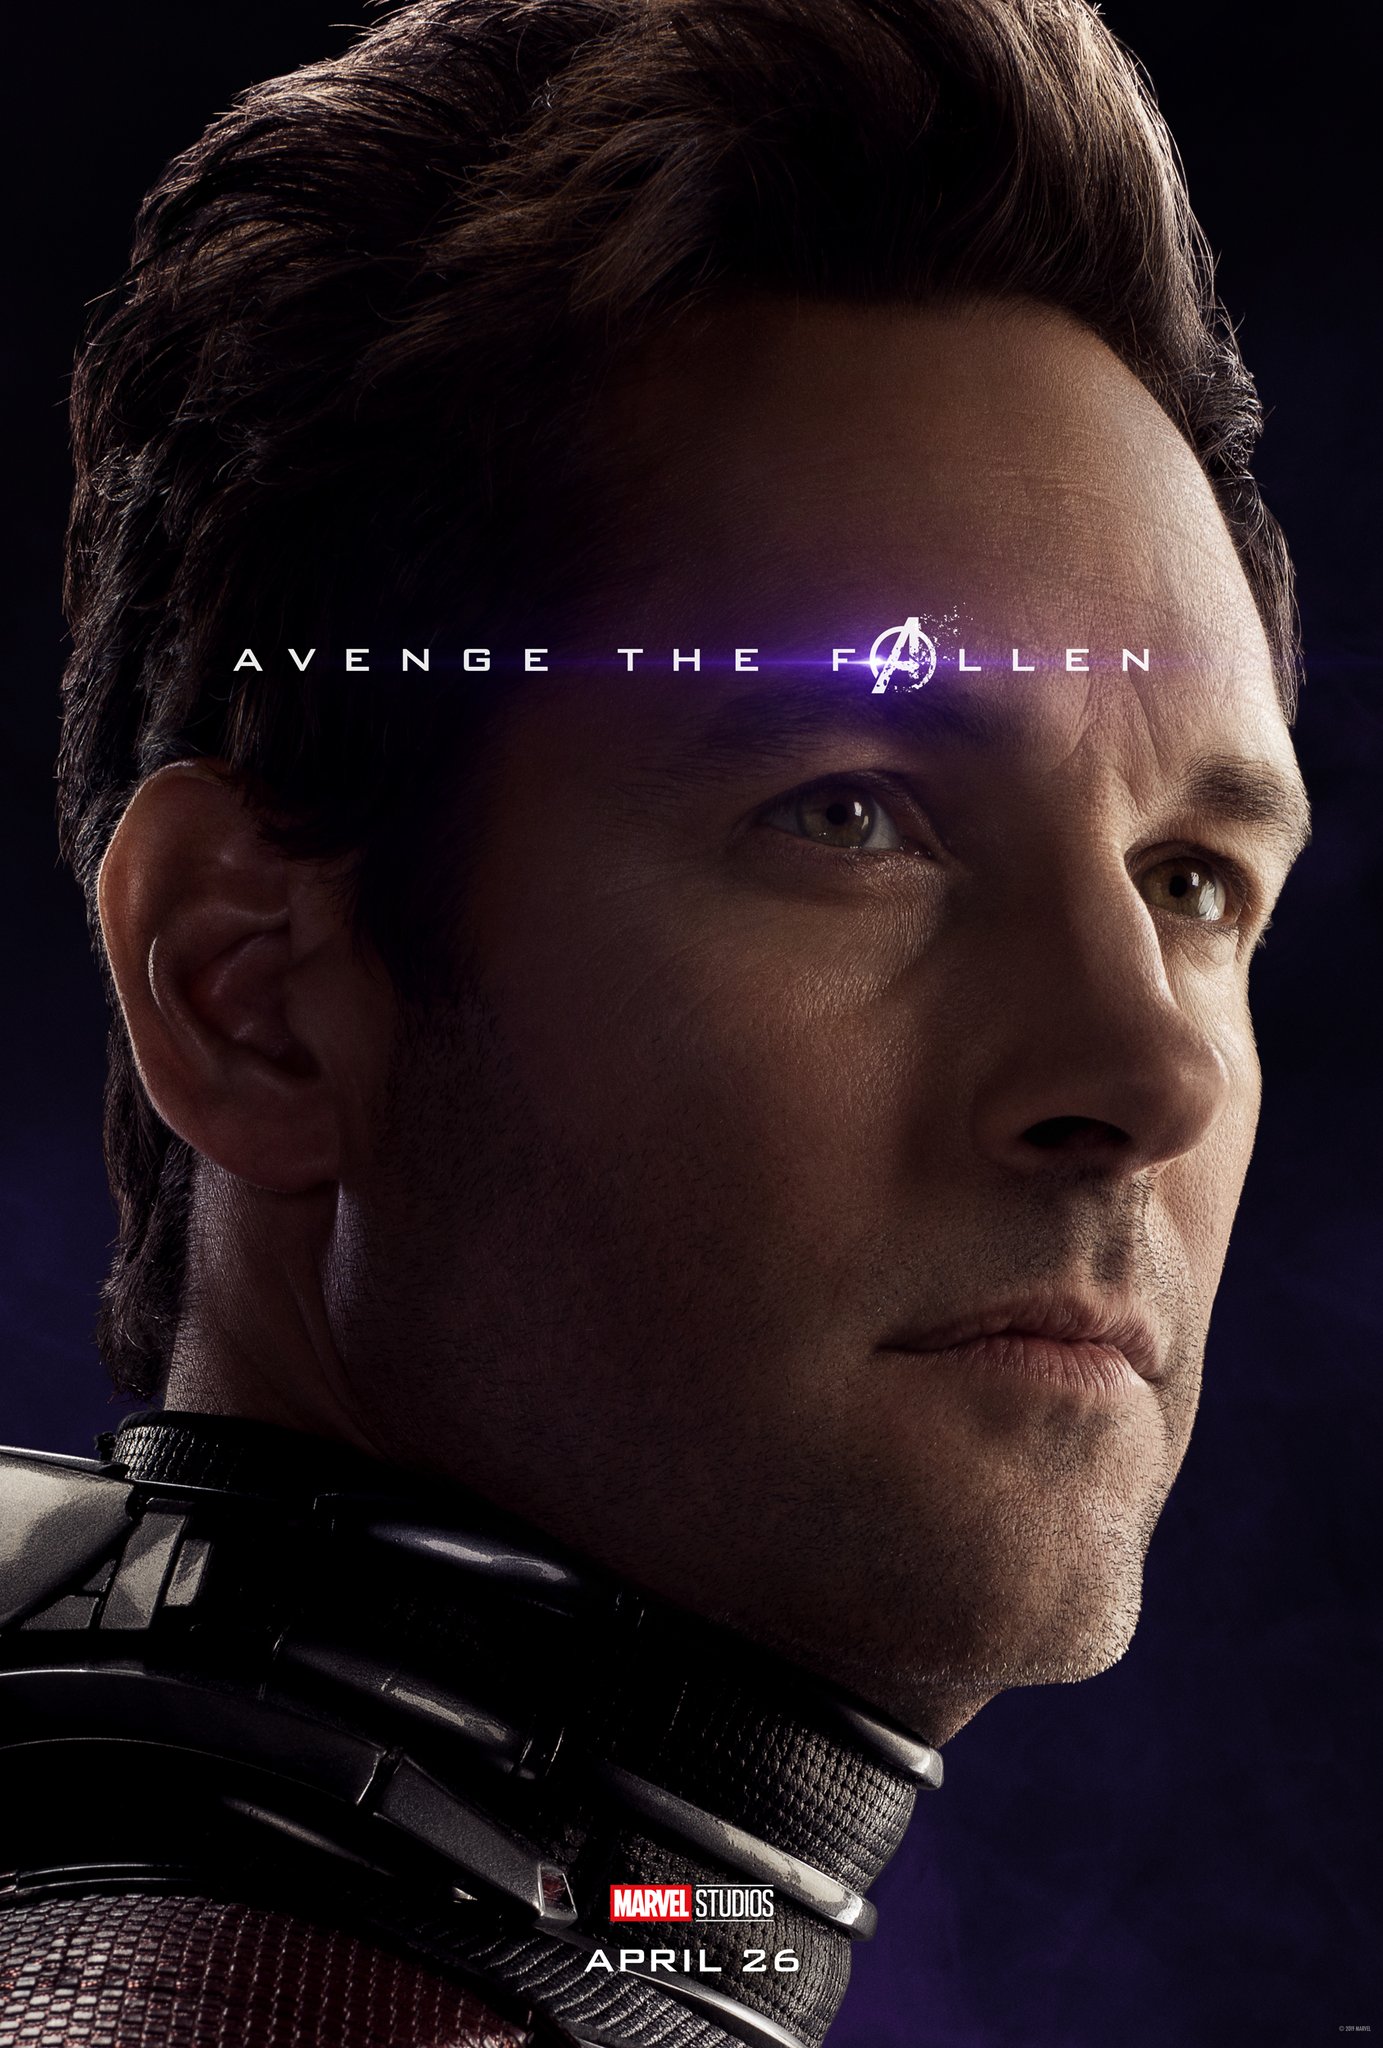 New Avengers: Endgame Solo Posters 'Avenge the Fallen'